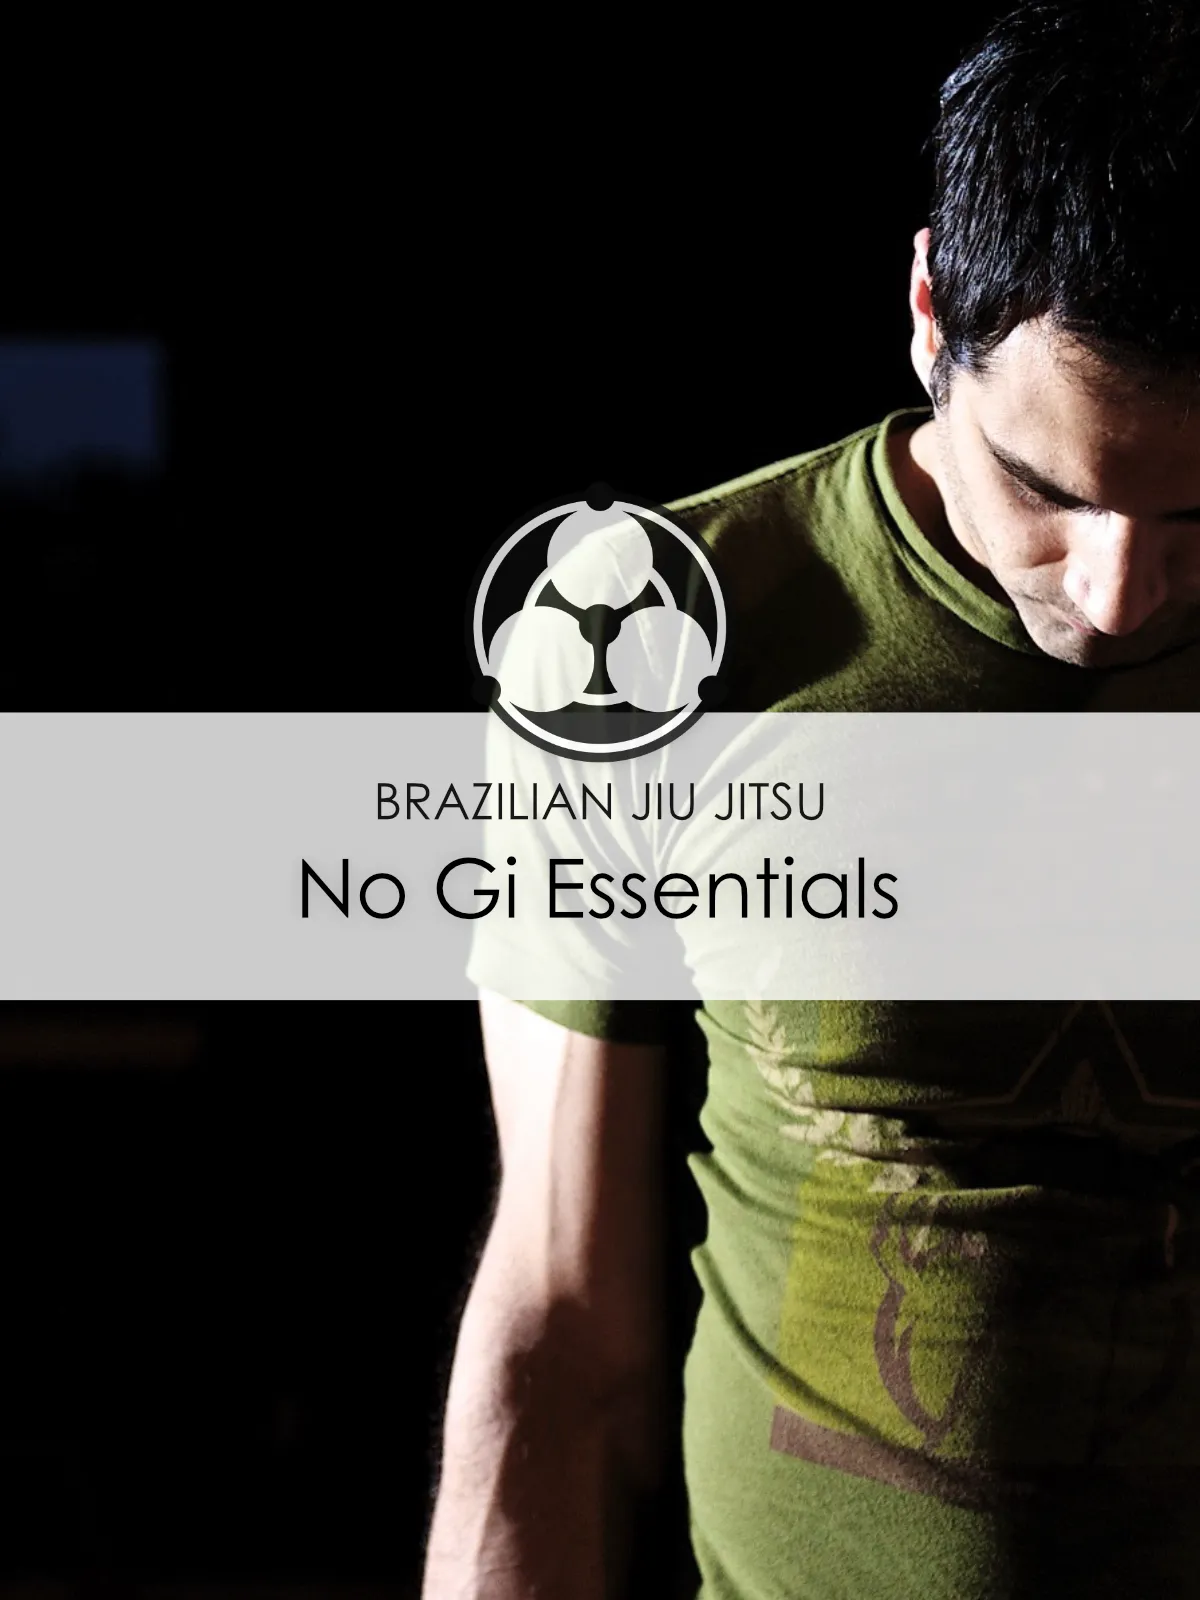 Brazilian jiu jitsu No Gi Essentials